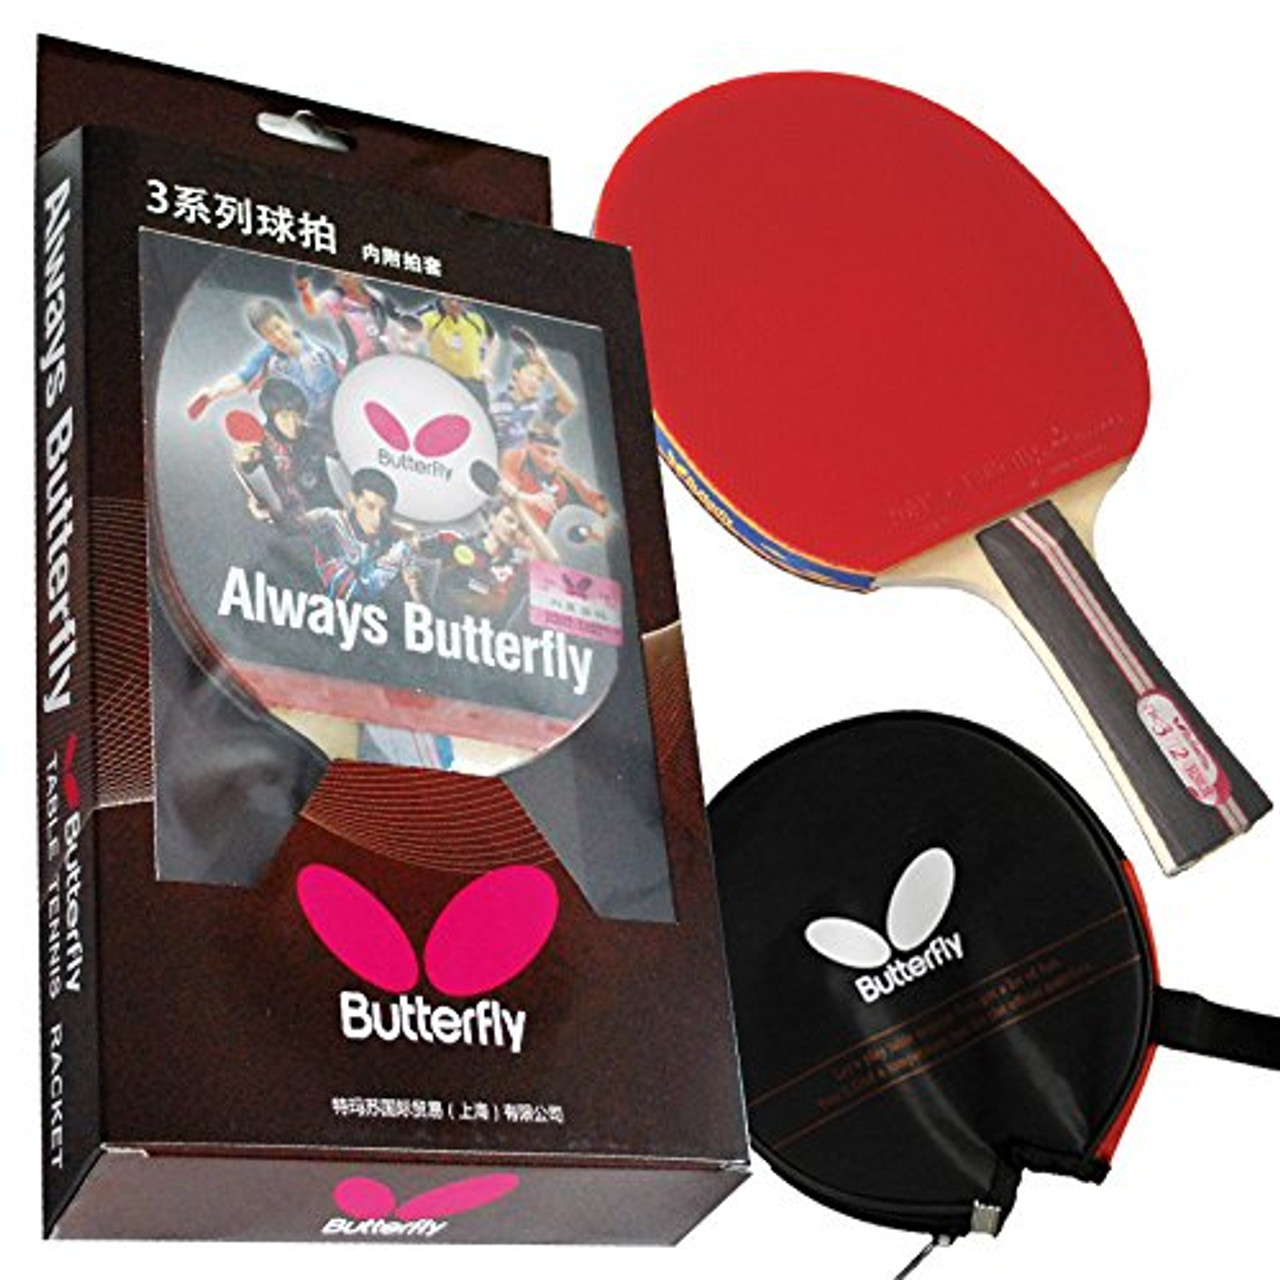 Butterfly 302 Shakehand Table Tennis Racket W/Case | BilliardWholesale